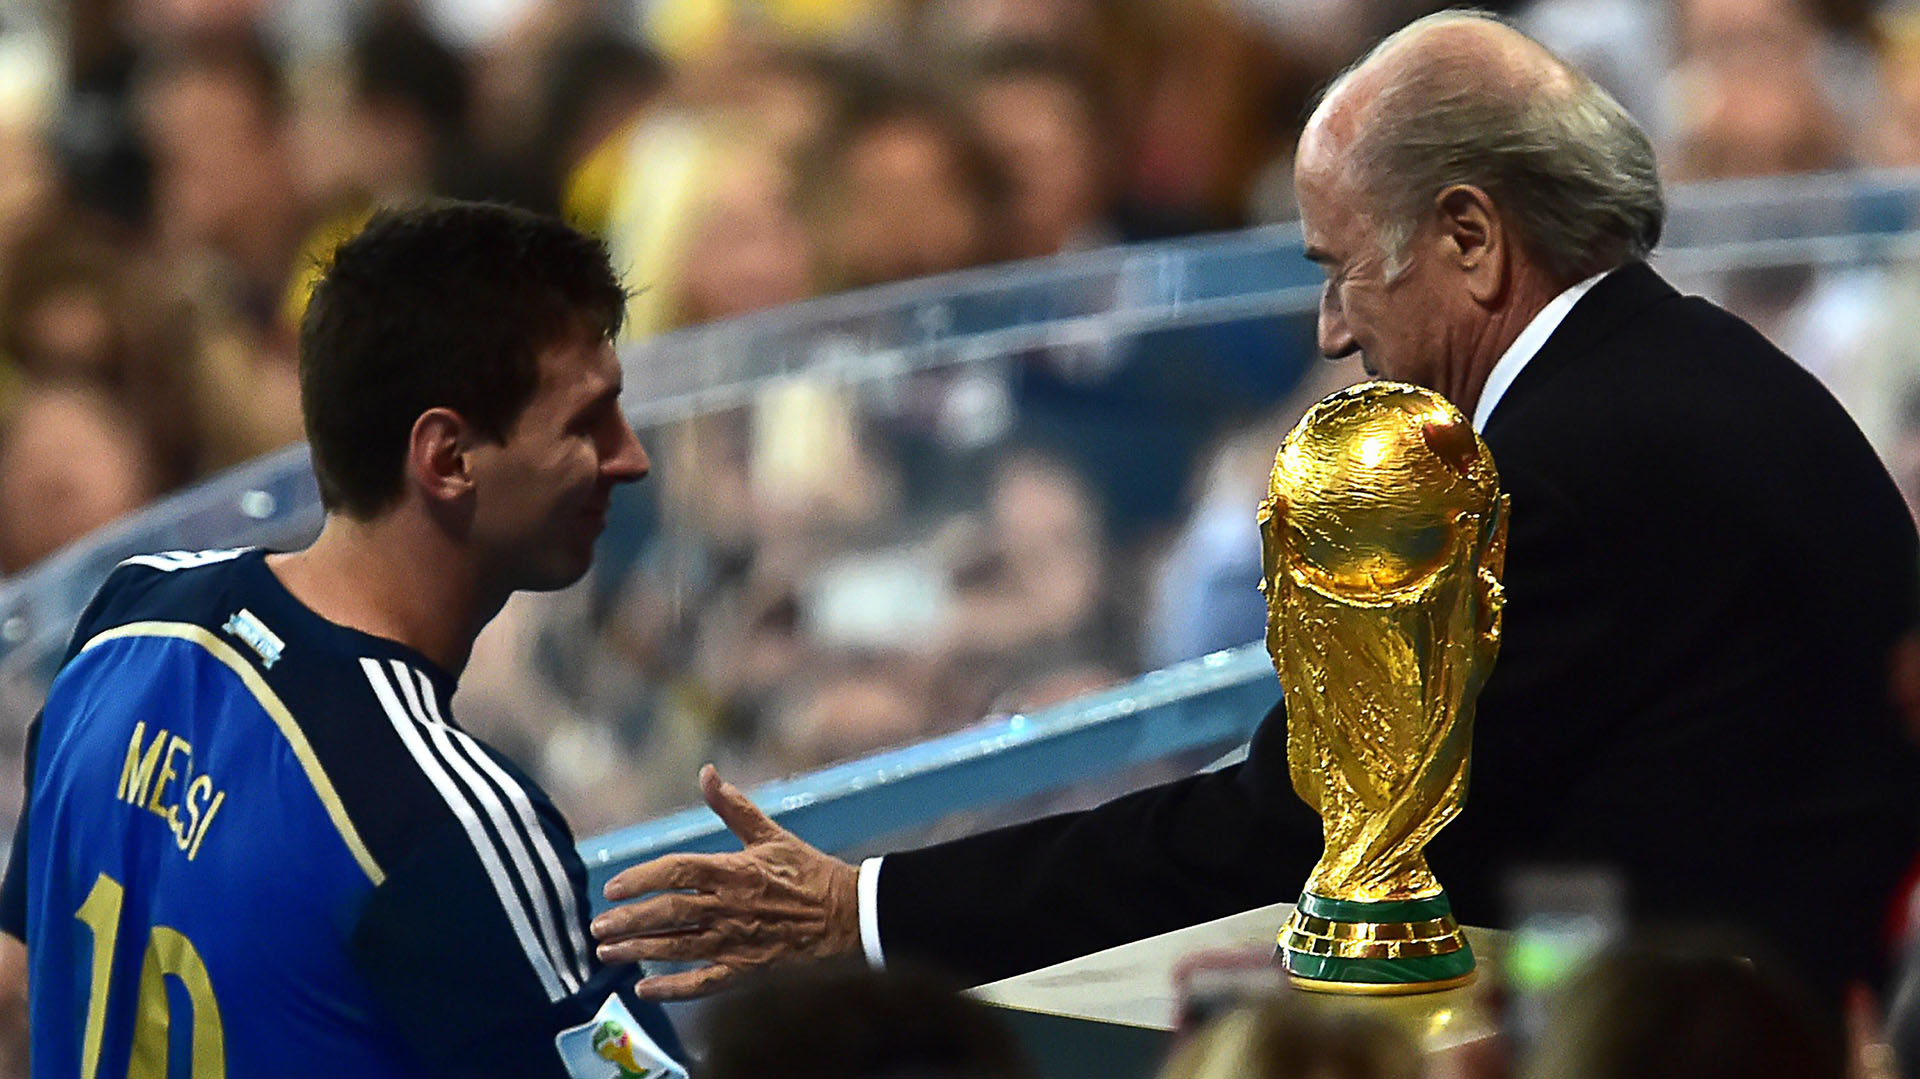 En 2014 Messi pasó junto al trofeo para recibir el Balón de Oro y saludar a Joseph Blatter, presidente de la FIFA en ese entonces (Foto: AFP)